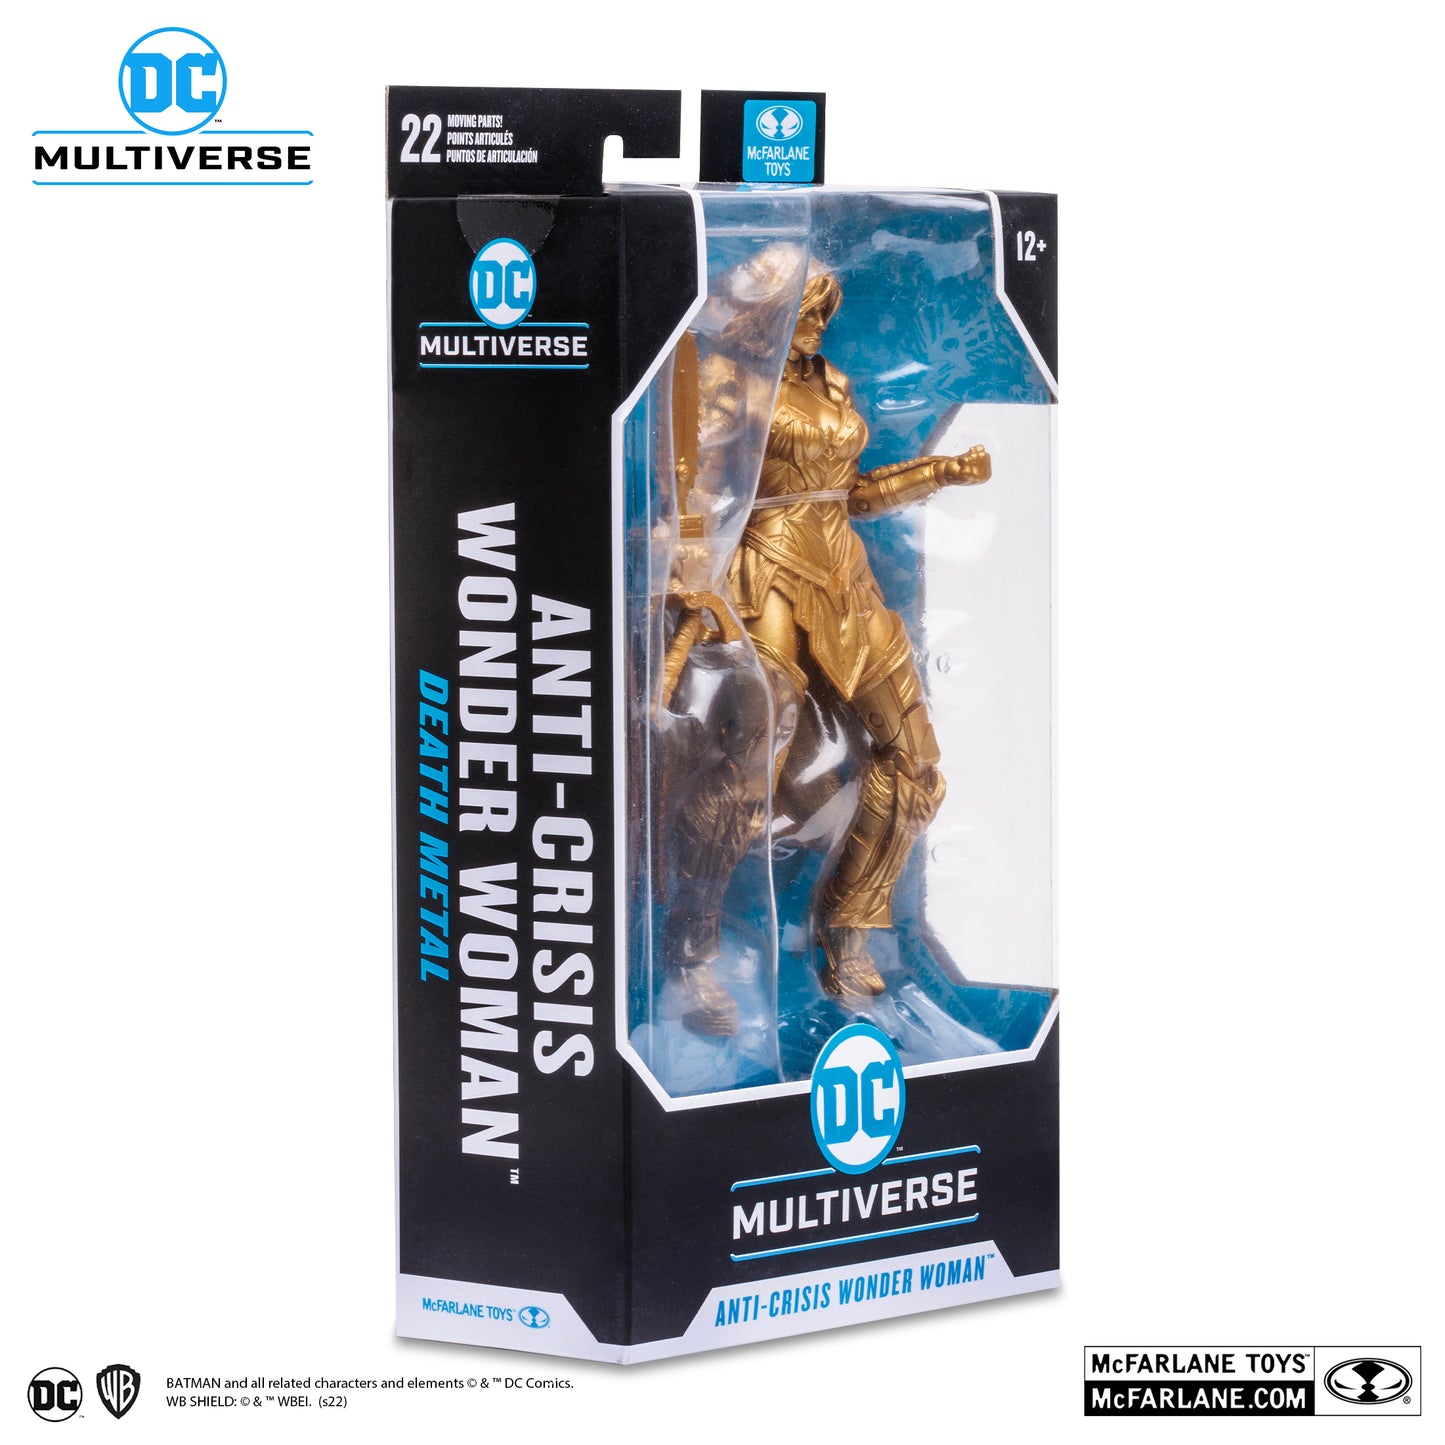 McFarlane Toys DC Multiverse Anti-Crisis Wonder Woman